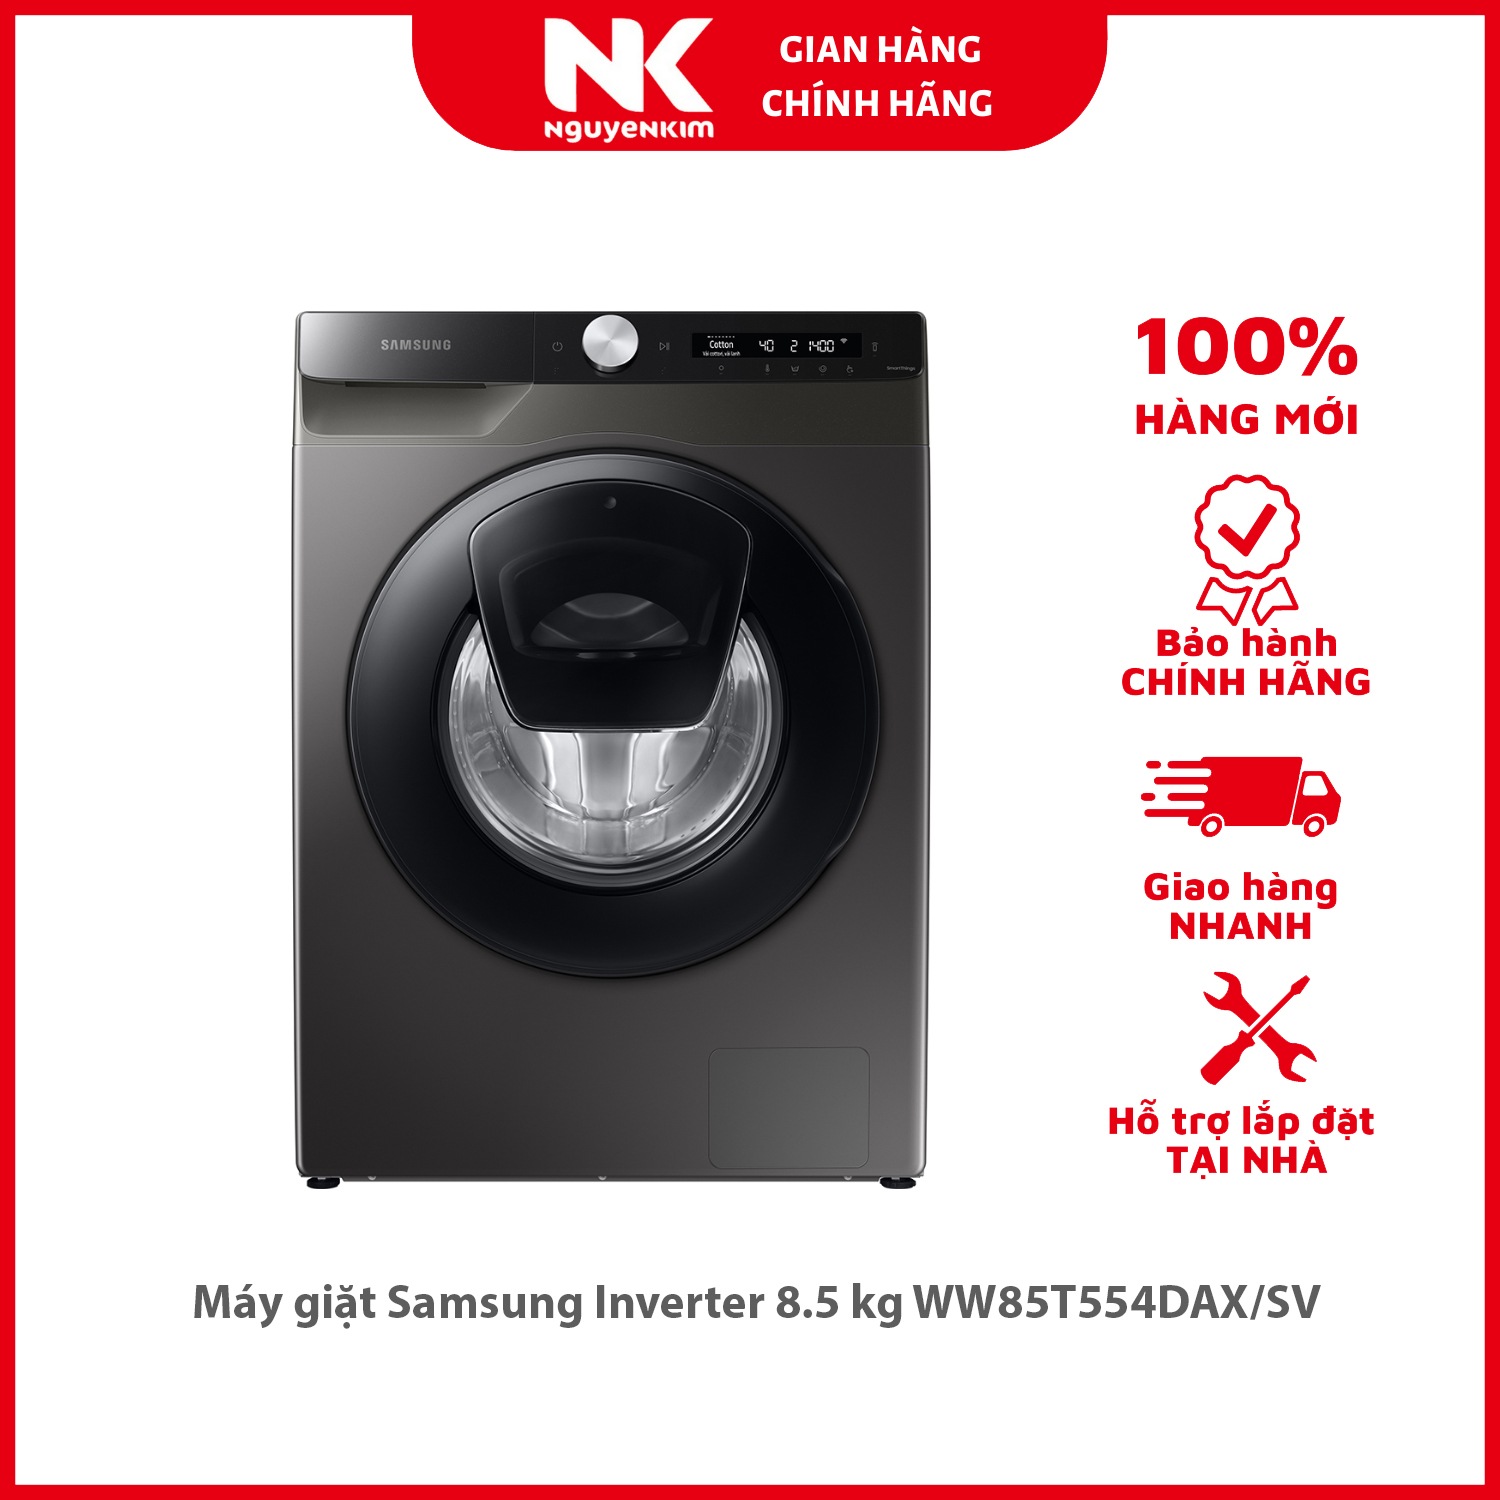 Máy giặt Samsung Inverter 8.5 kg WW85T554DAX/SV - Hàng chính hãng [Giao hàng toàn quốc]